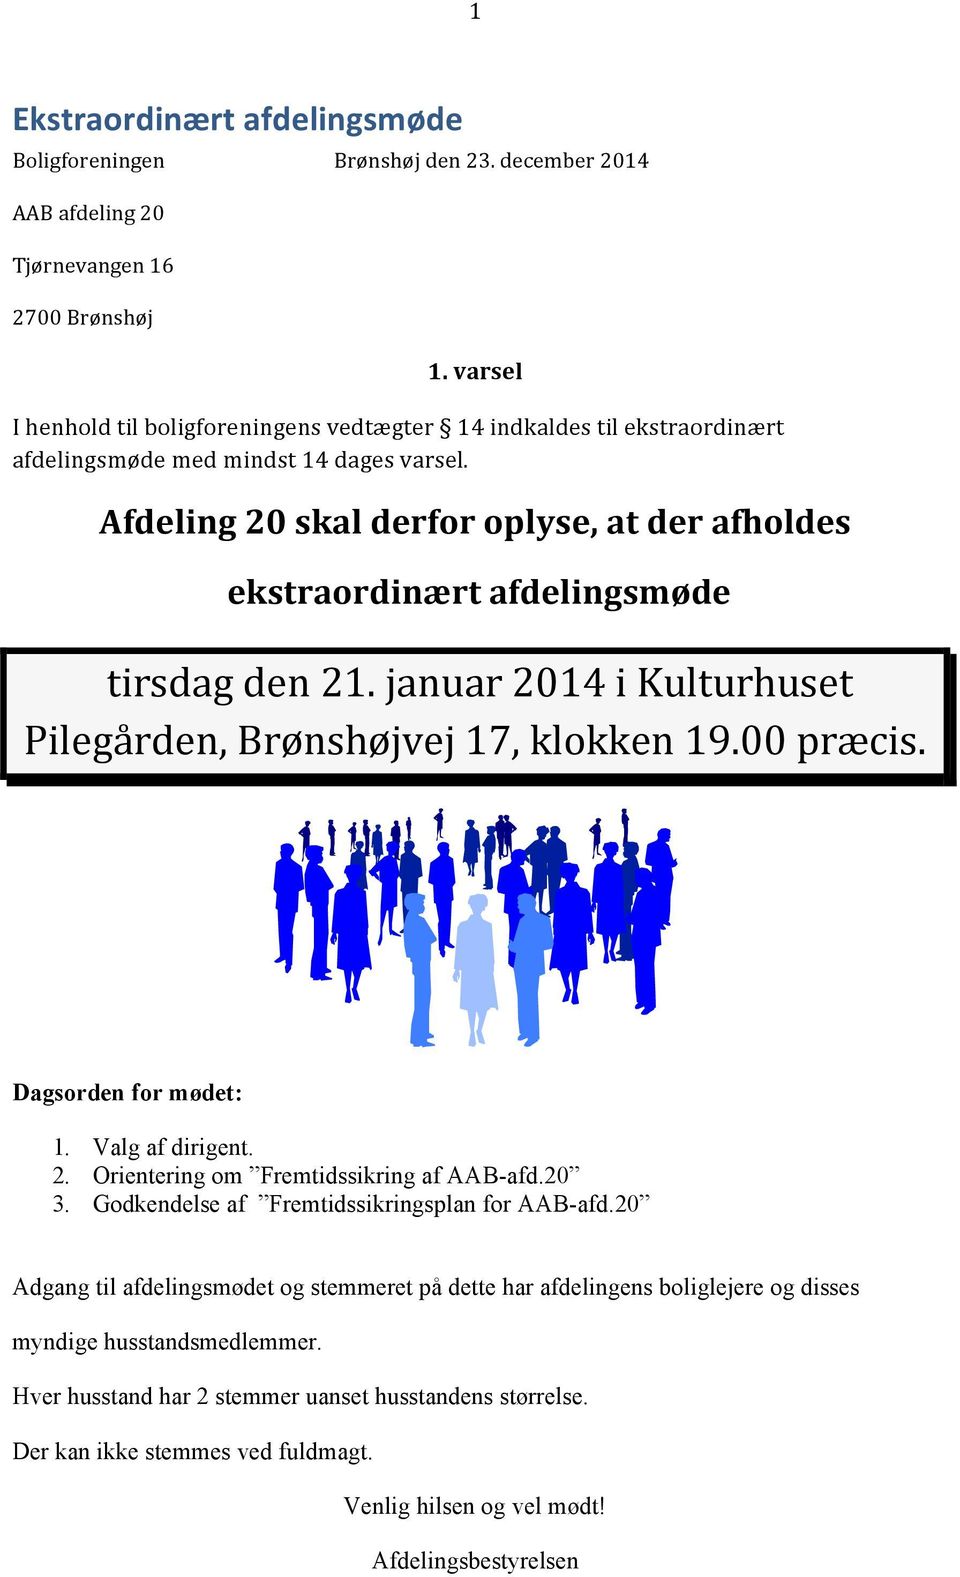 Afdeling 20 skal derfor oplyse, at der afholdes ekstraordinært afdelingsmøde tirsdag den 21. januar 2014 i Kulturhuset Pilegården, Brønshøjvej 17, klokken 19.00 præcis. Dagsorden for mødet: 1.